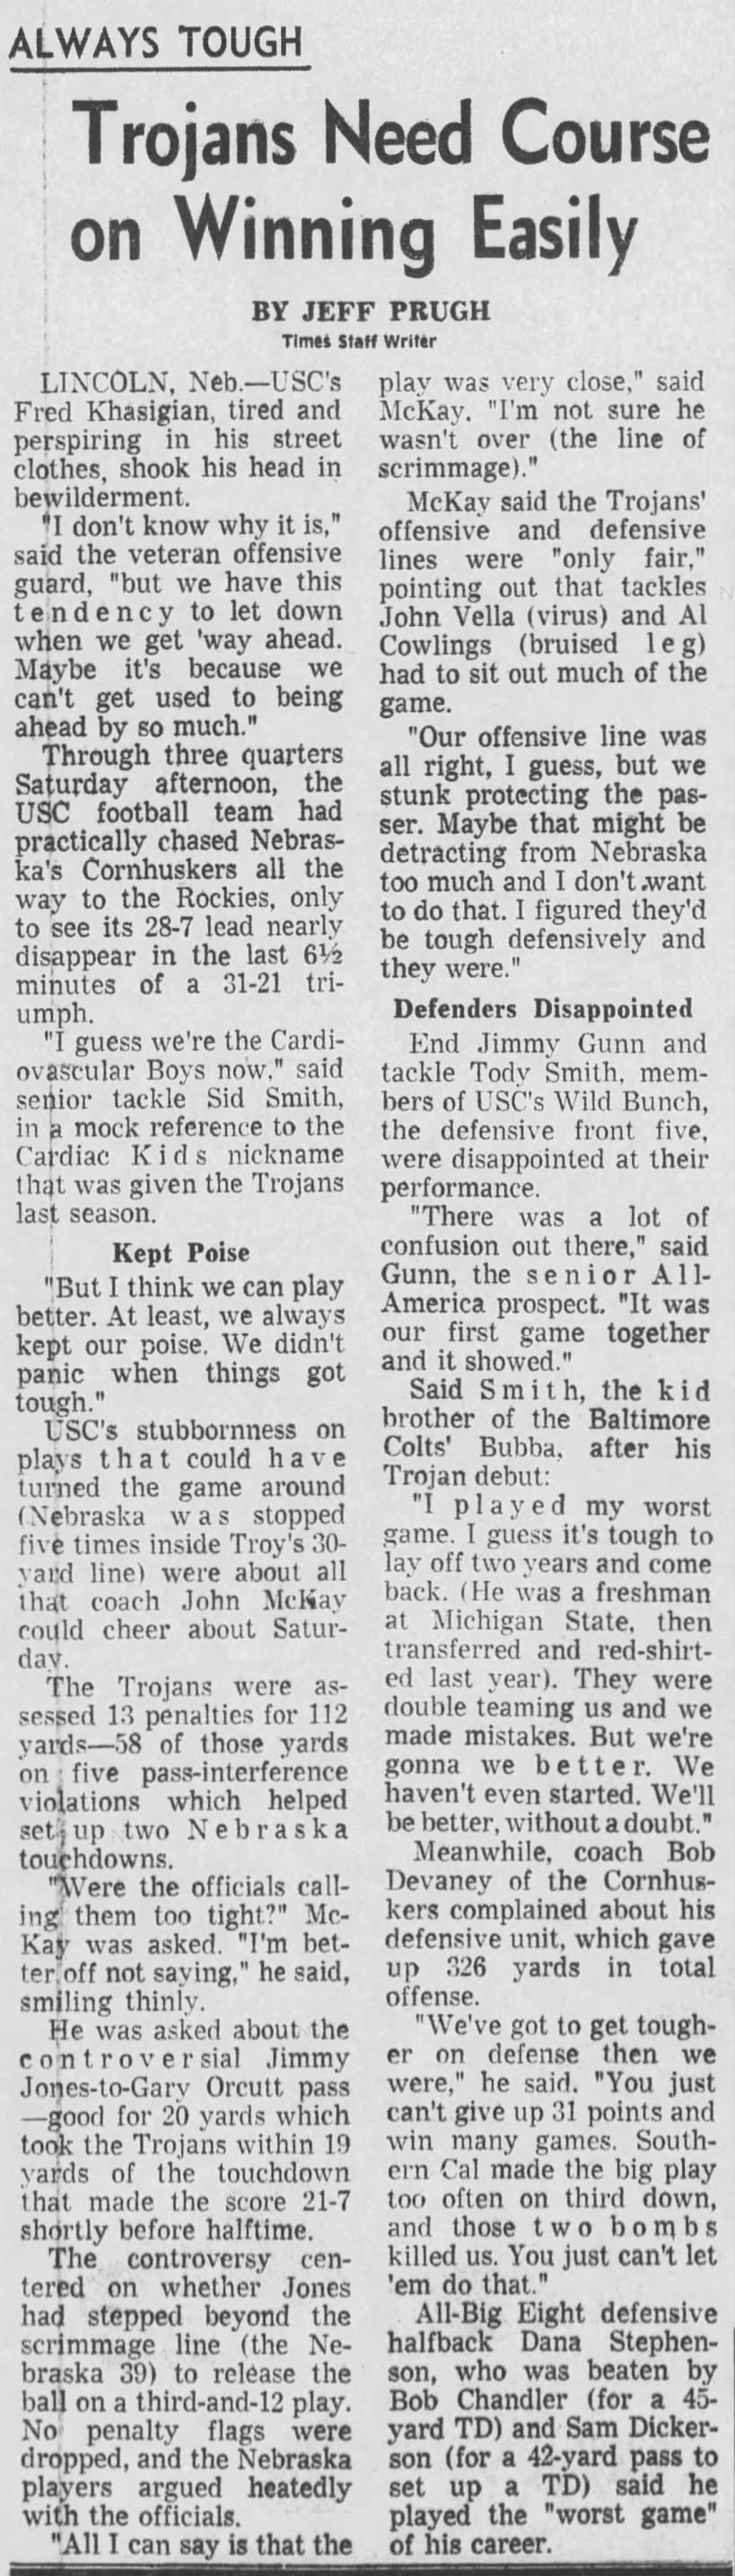 1969 Nebraska-Southern Cal football, LA Times